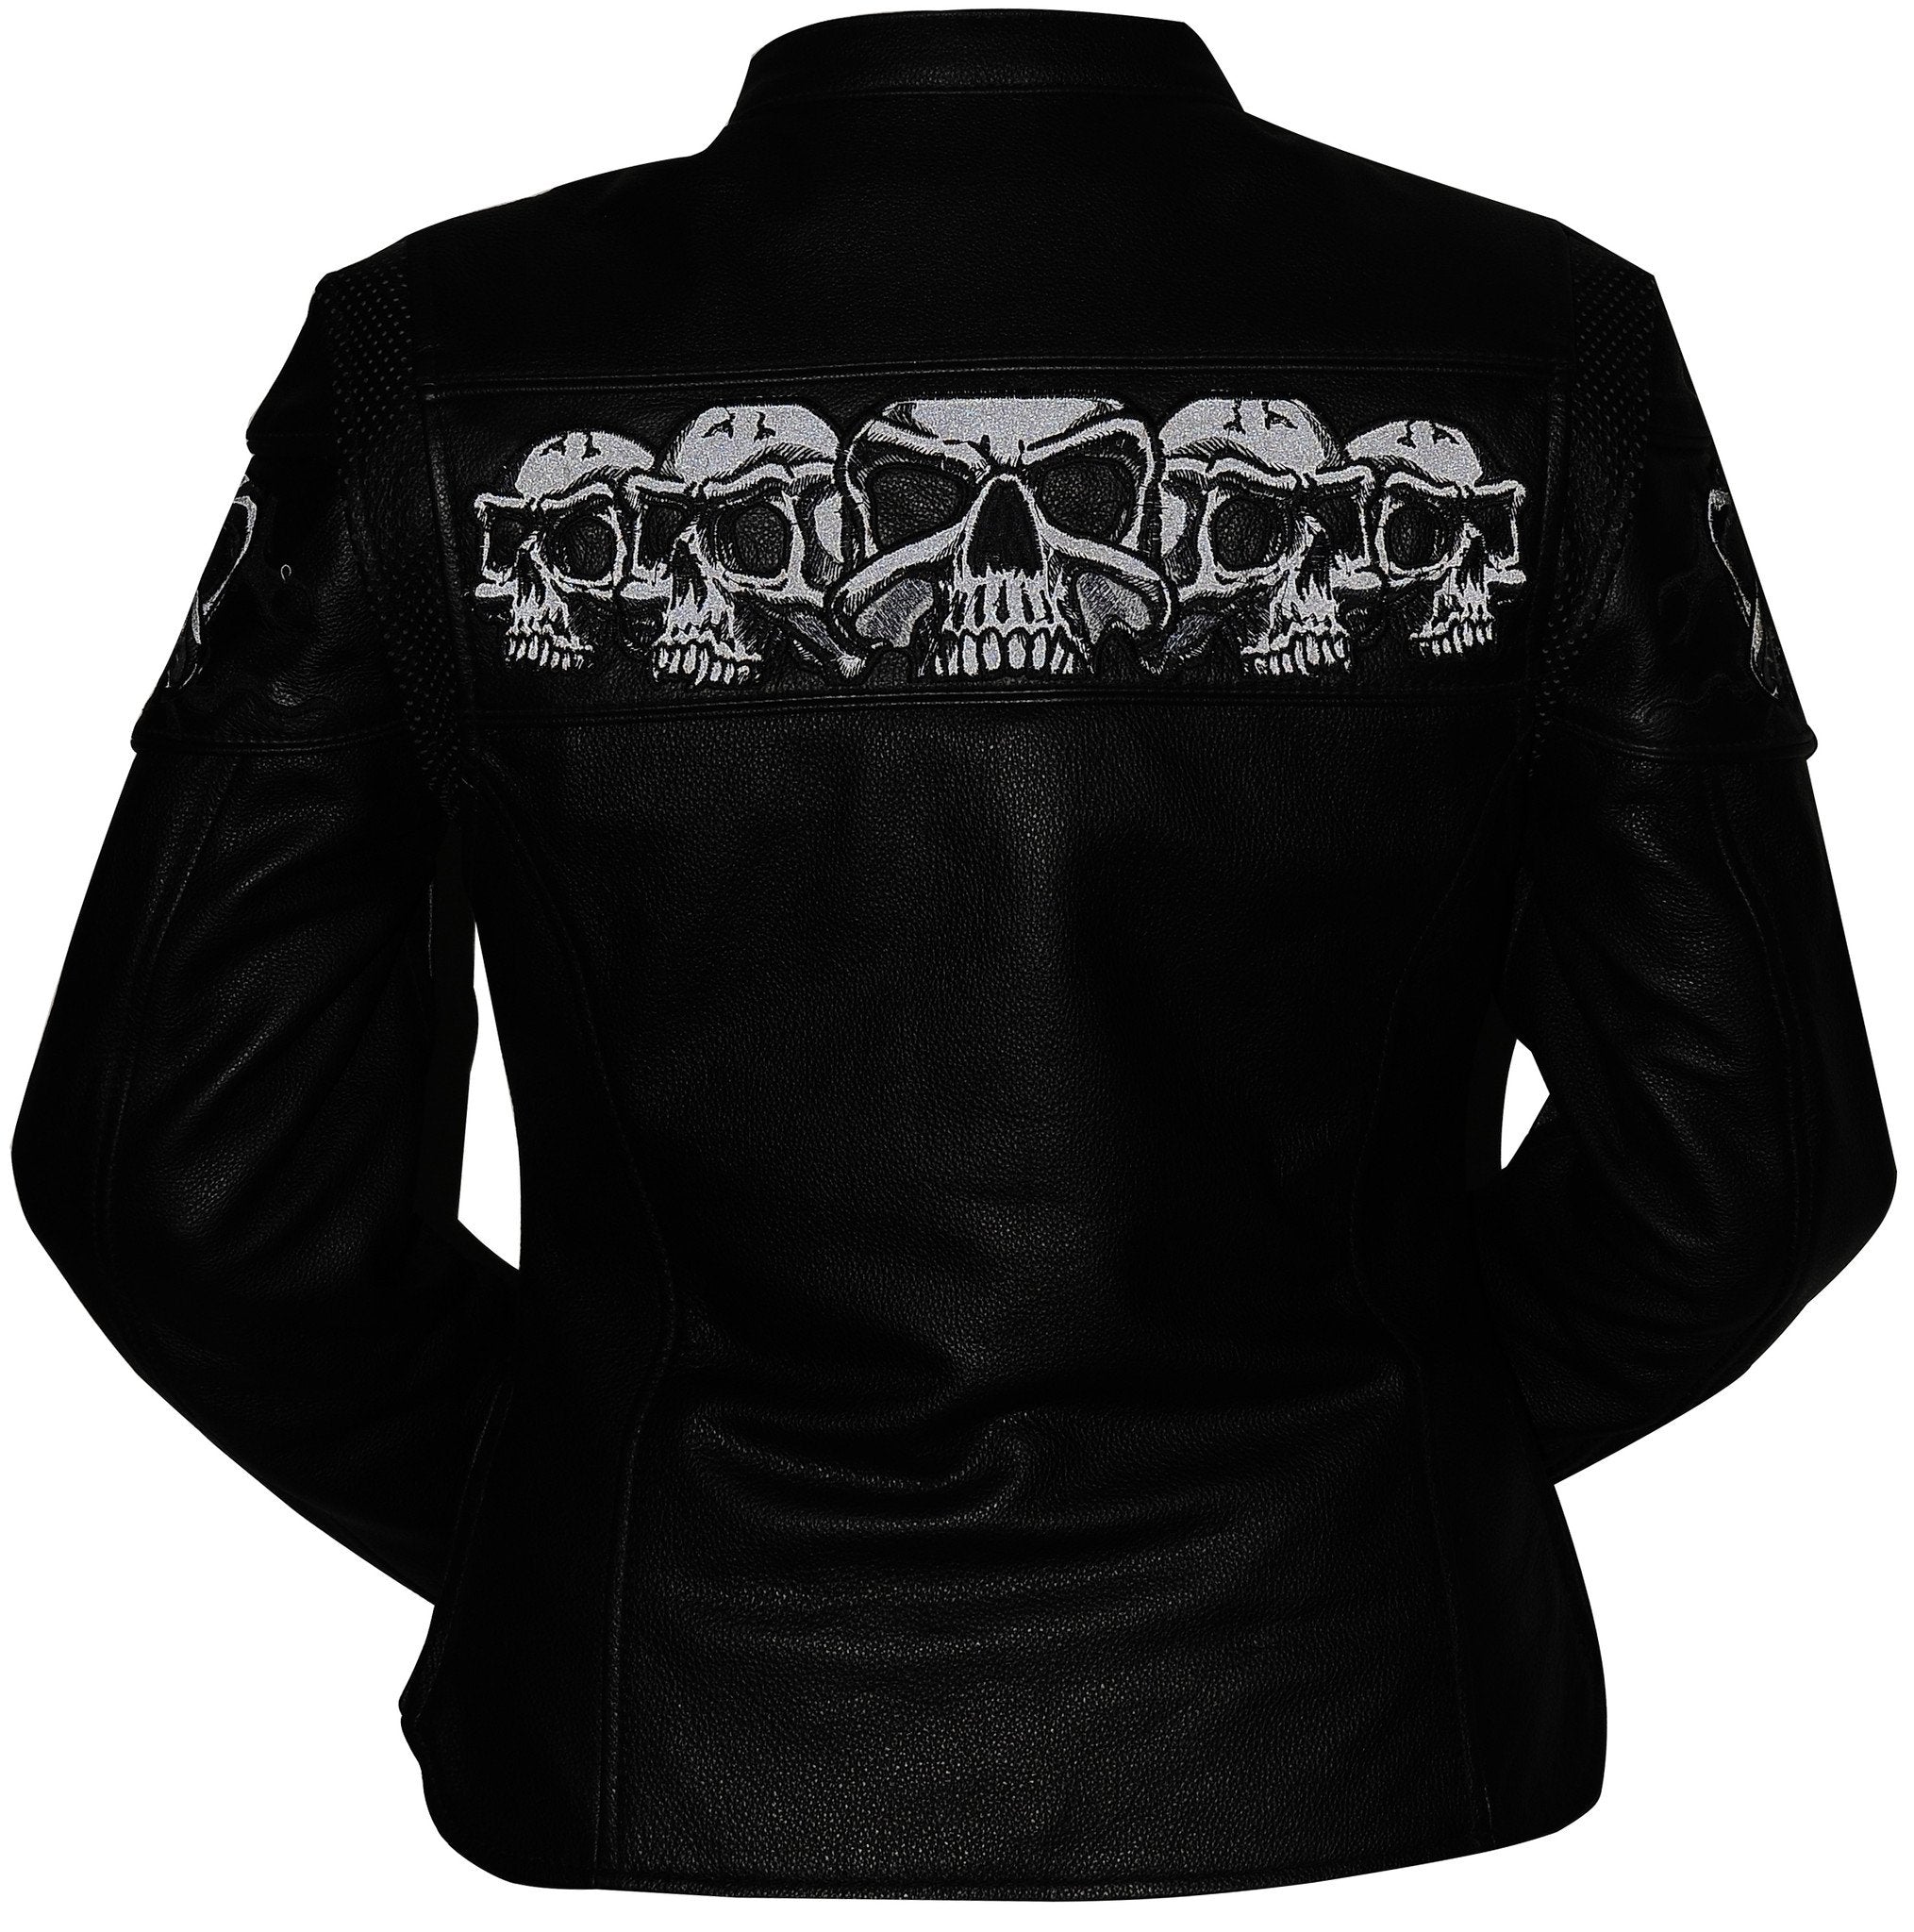 First Manufacturing Co: Jacket - Sacred Skulls